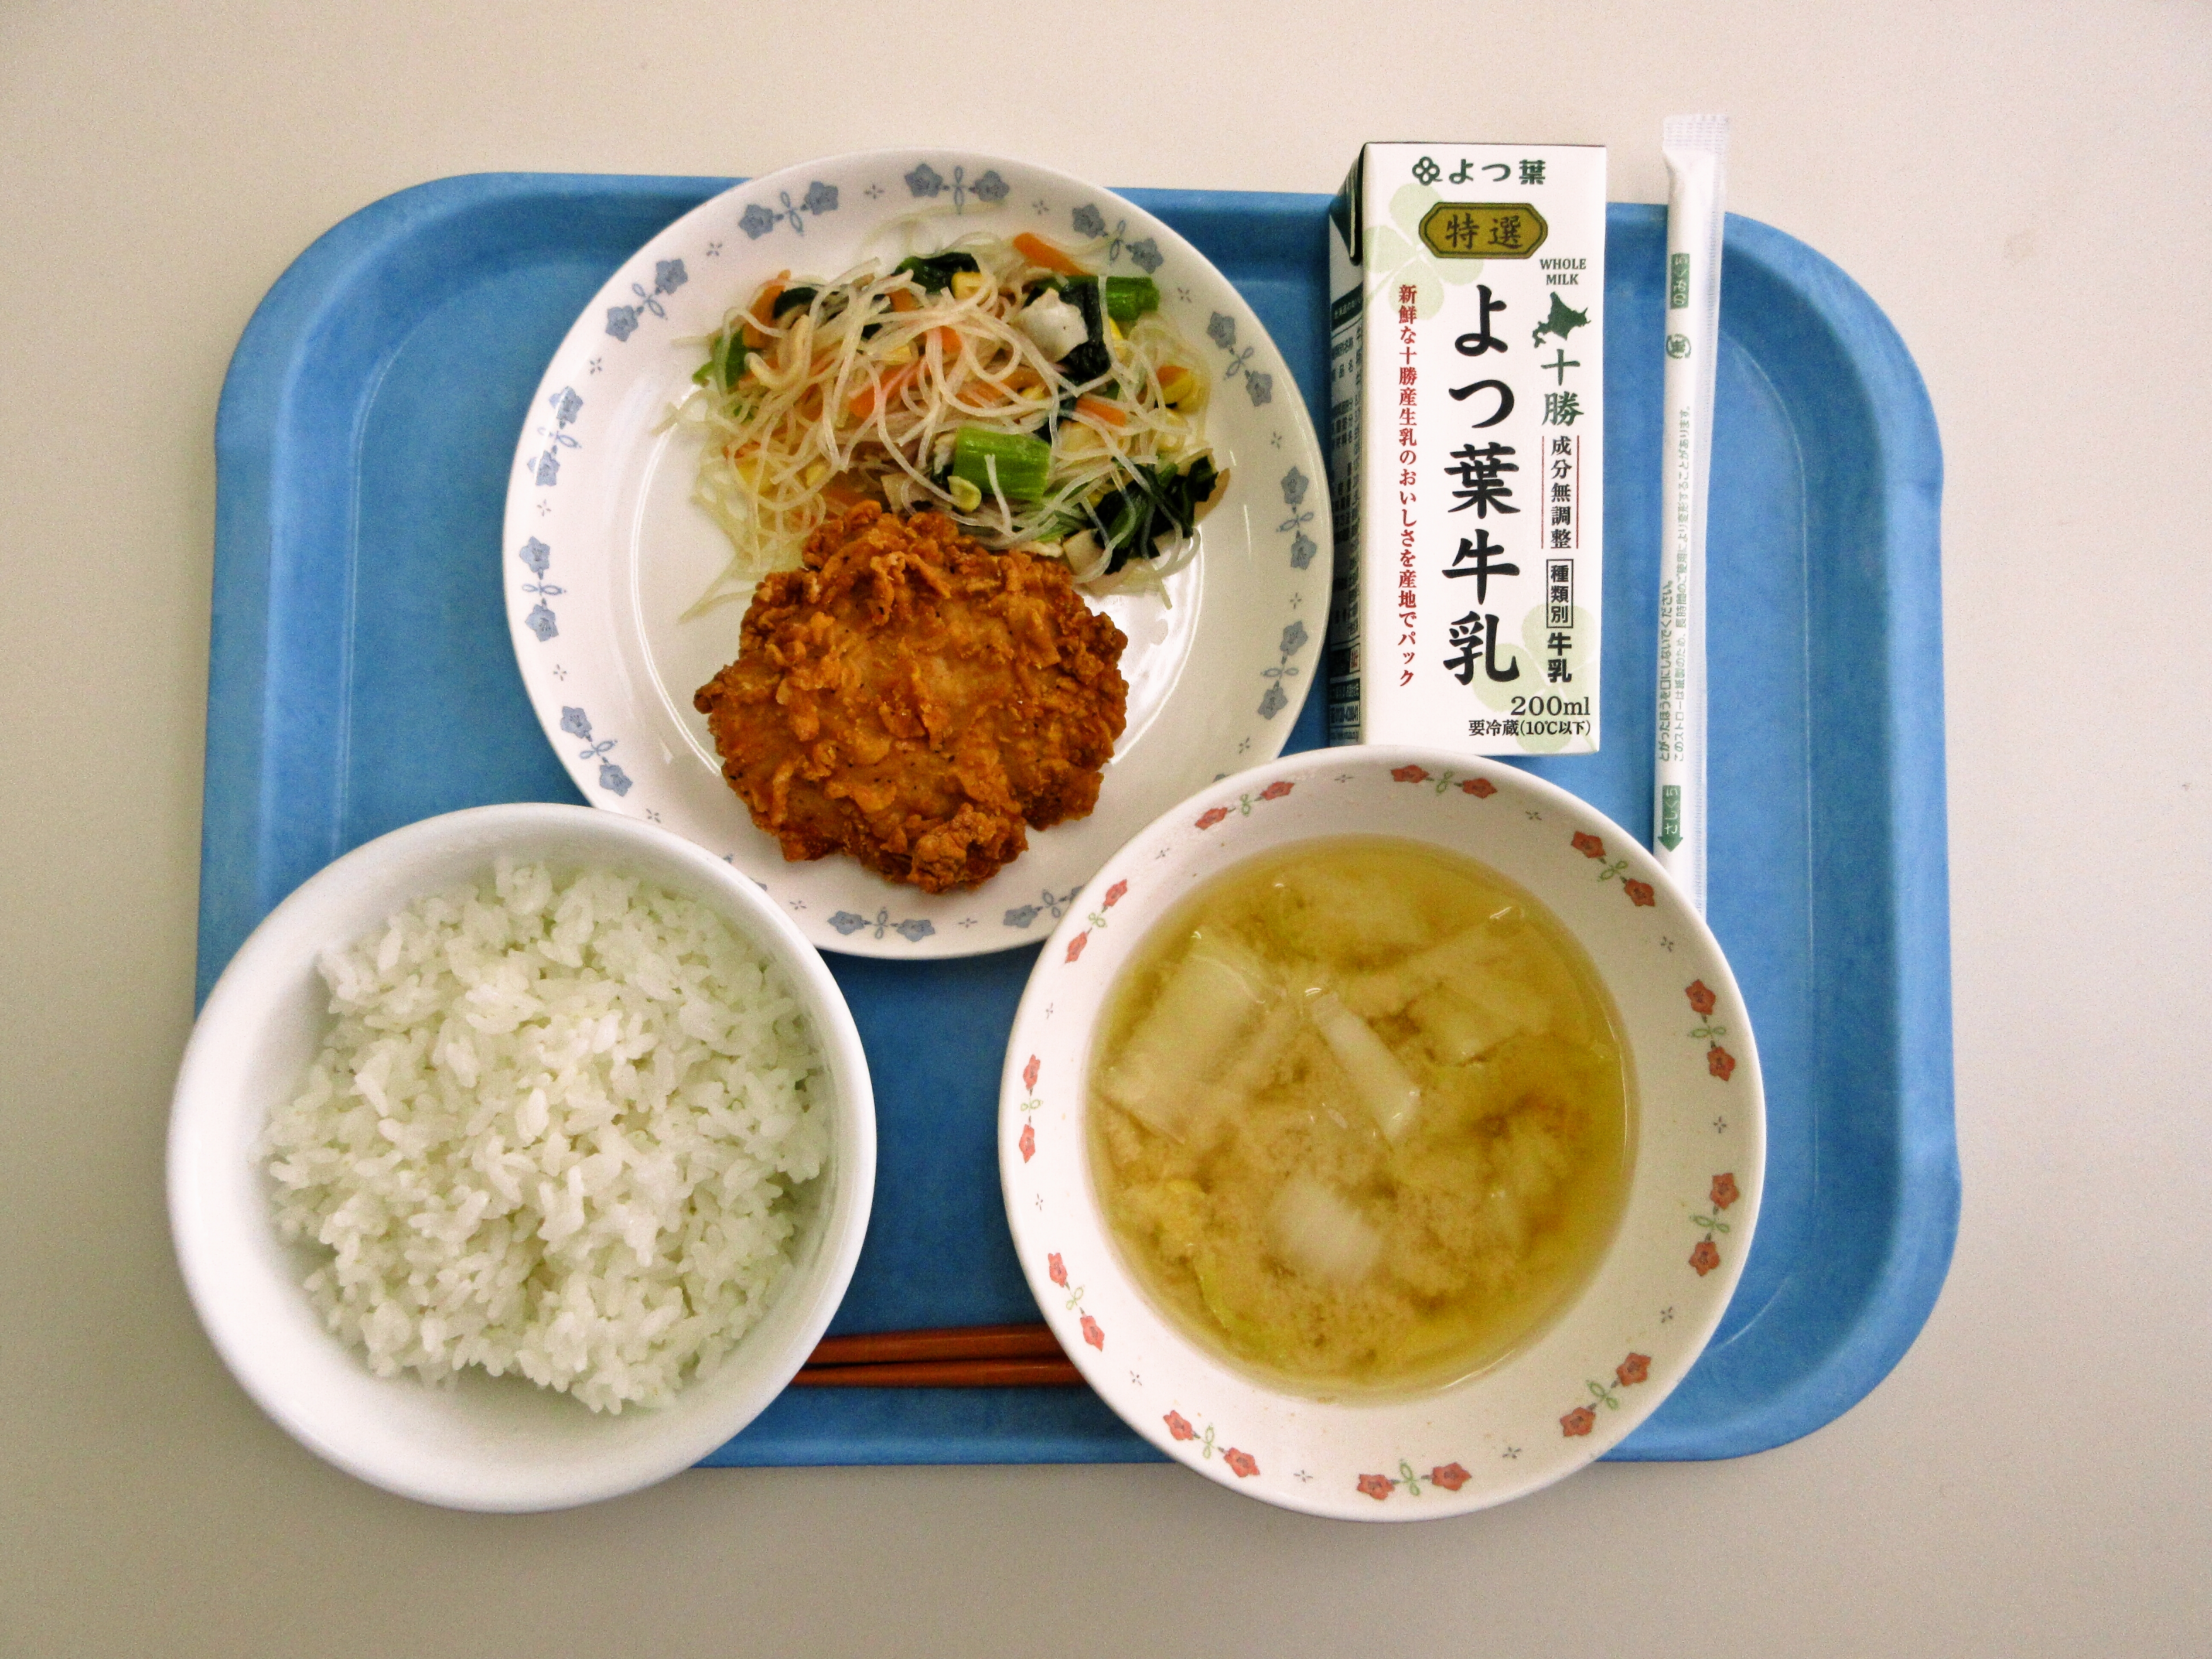 ごはん、みそ汁（白菜・人参）、クリスピーチキン、春雨サラダ、牛乳